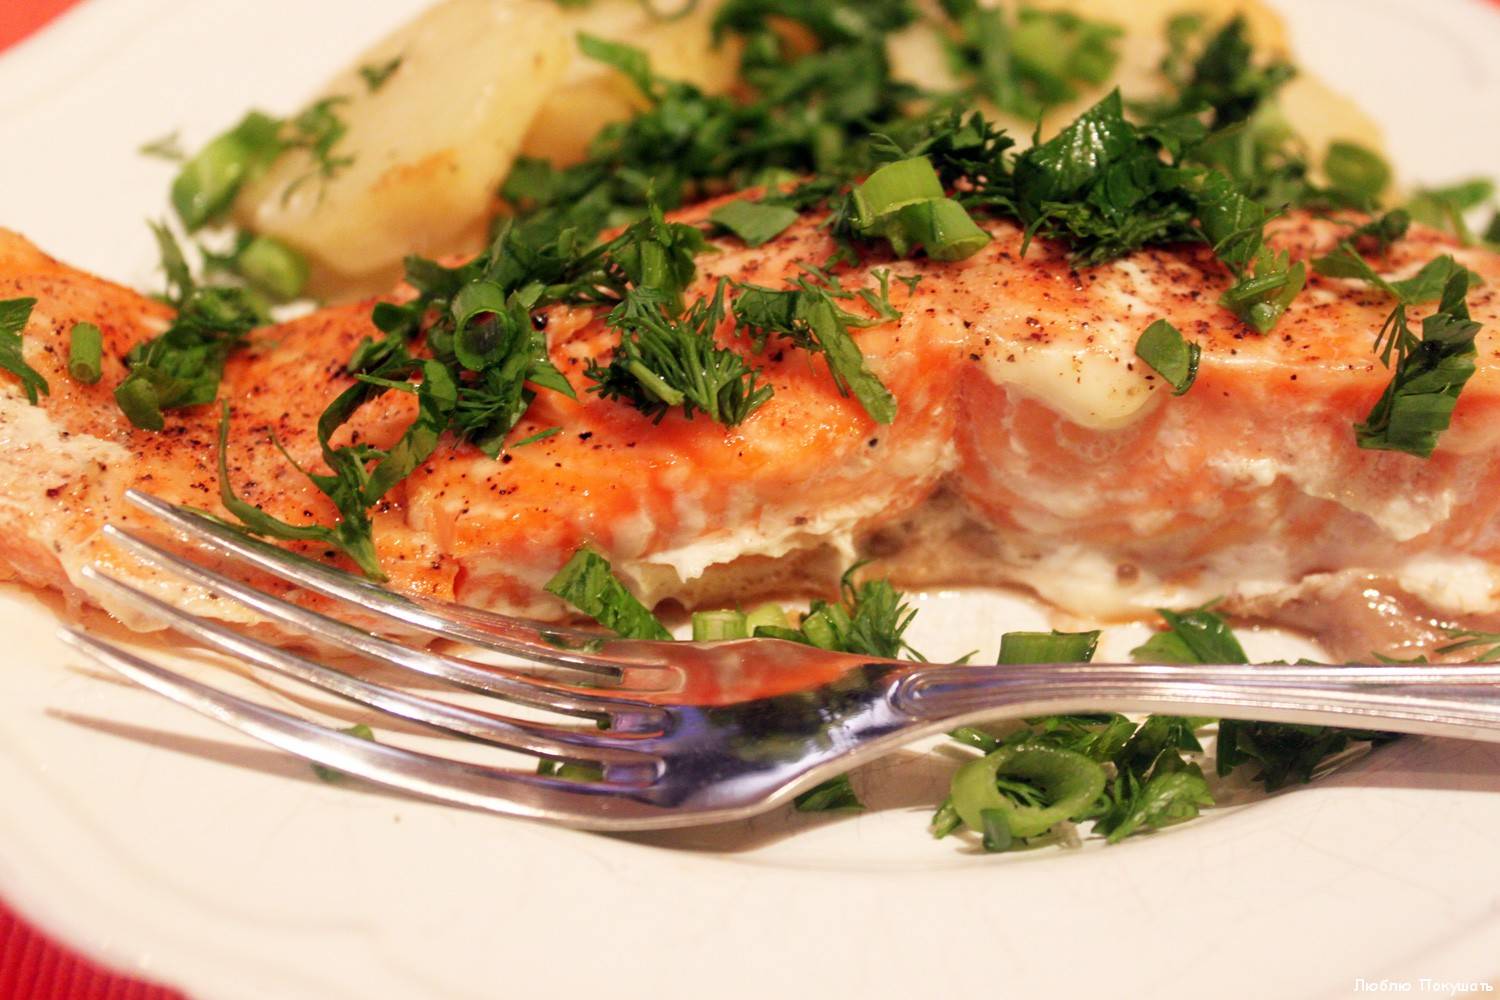 Бутерброды с красной рыбой: 11 вкусных и простых рецептов на праздничный стол